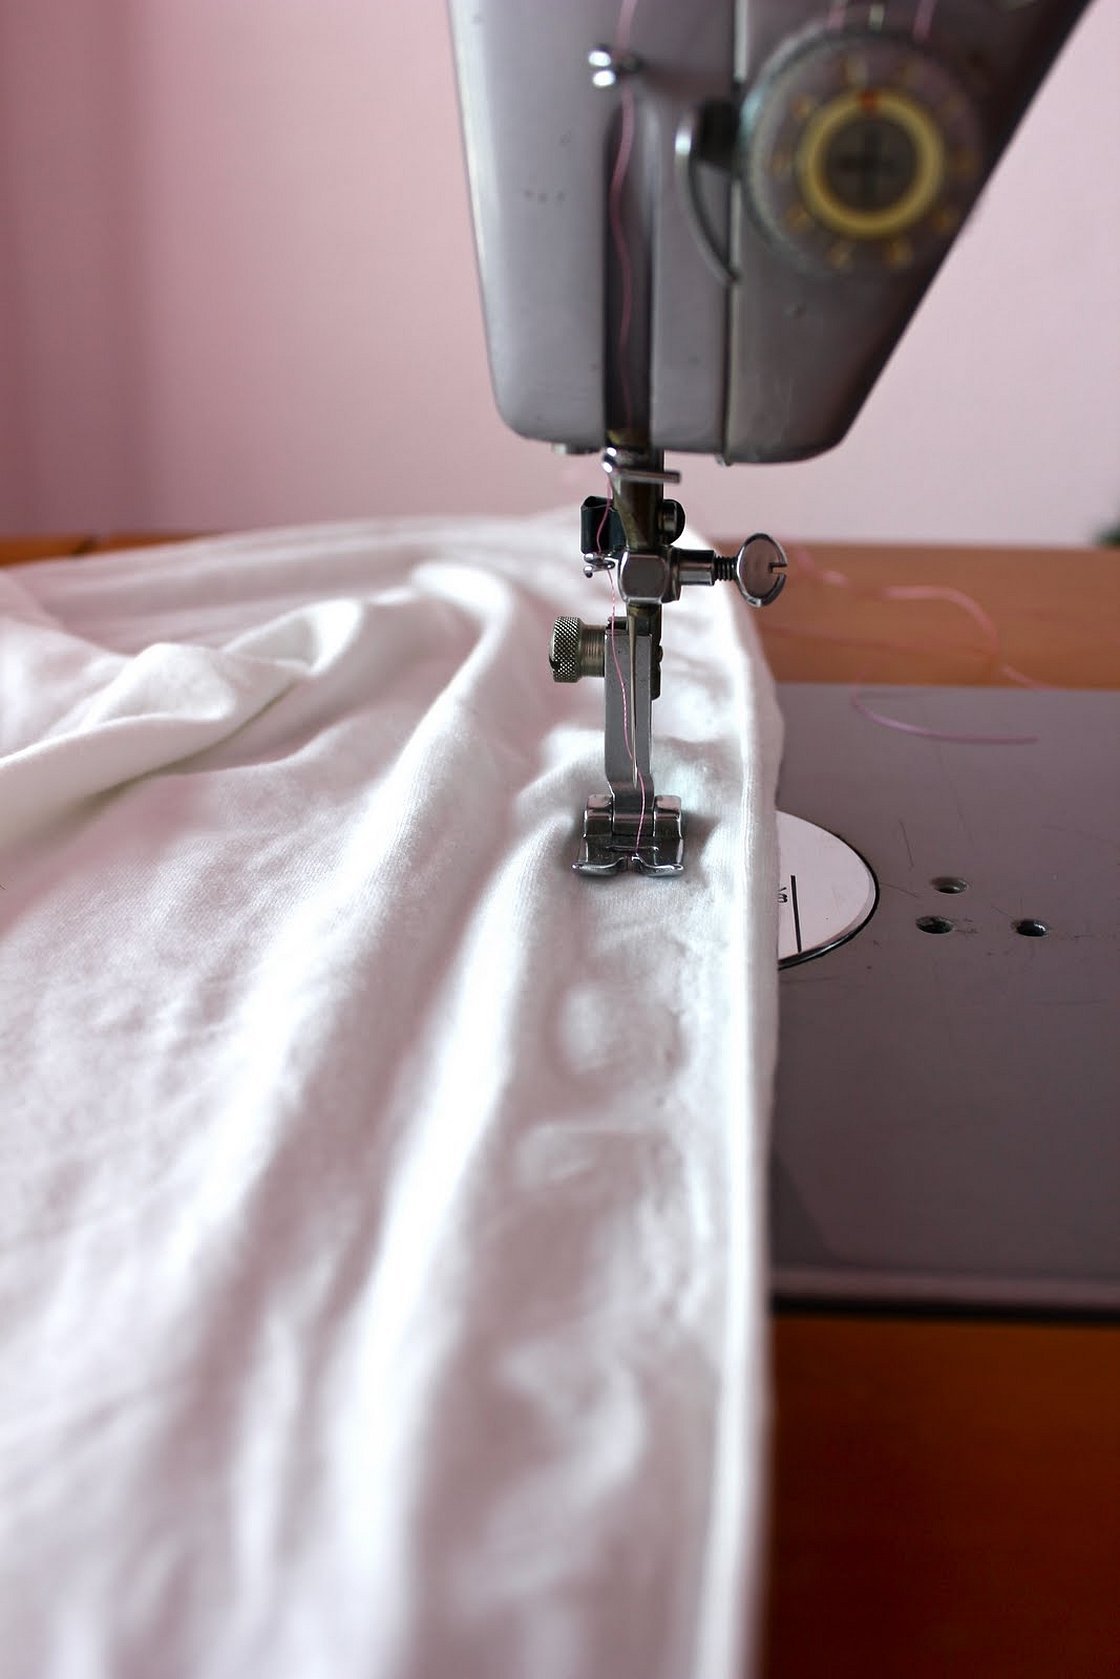 Платья сшитые своими руками на швейной машинке